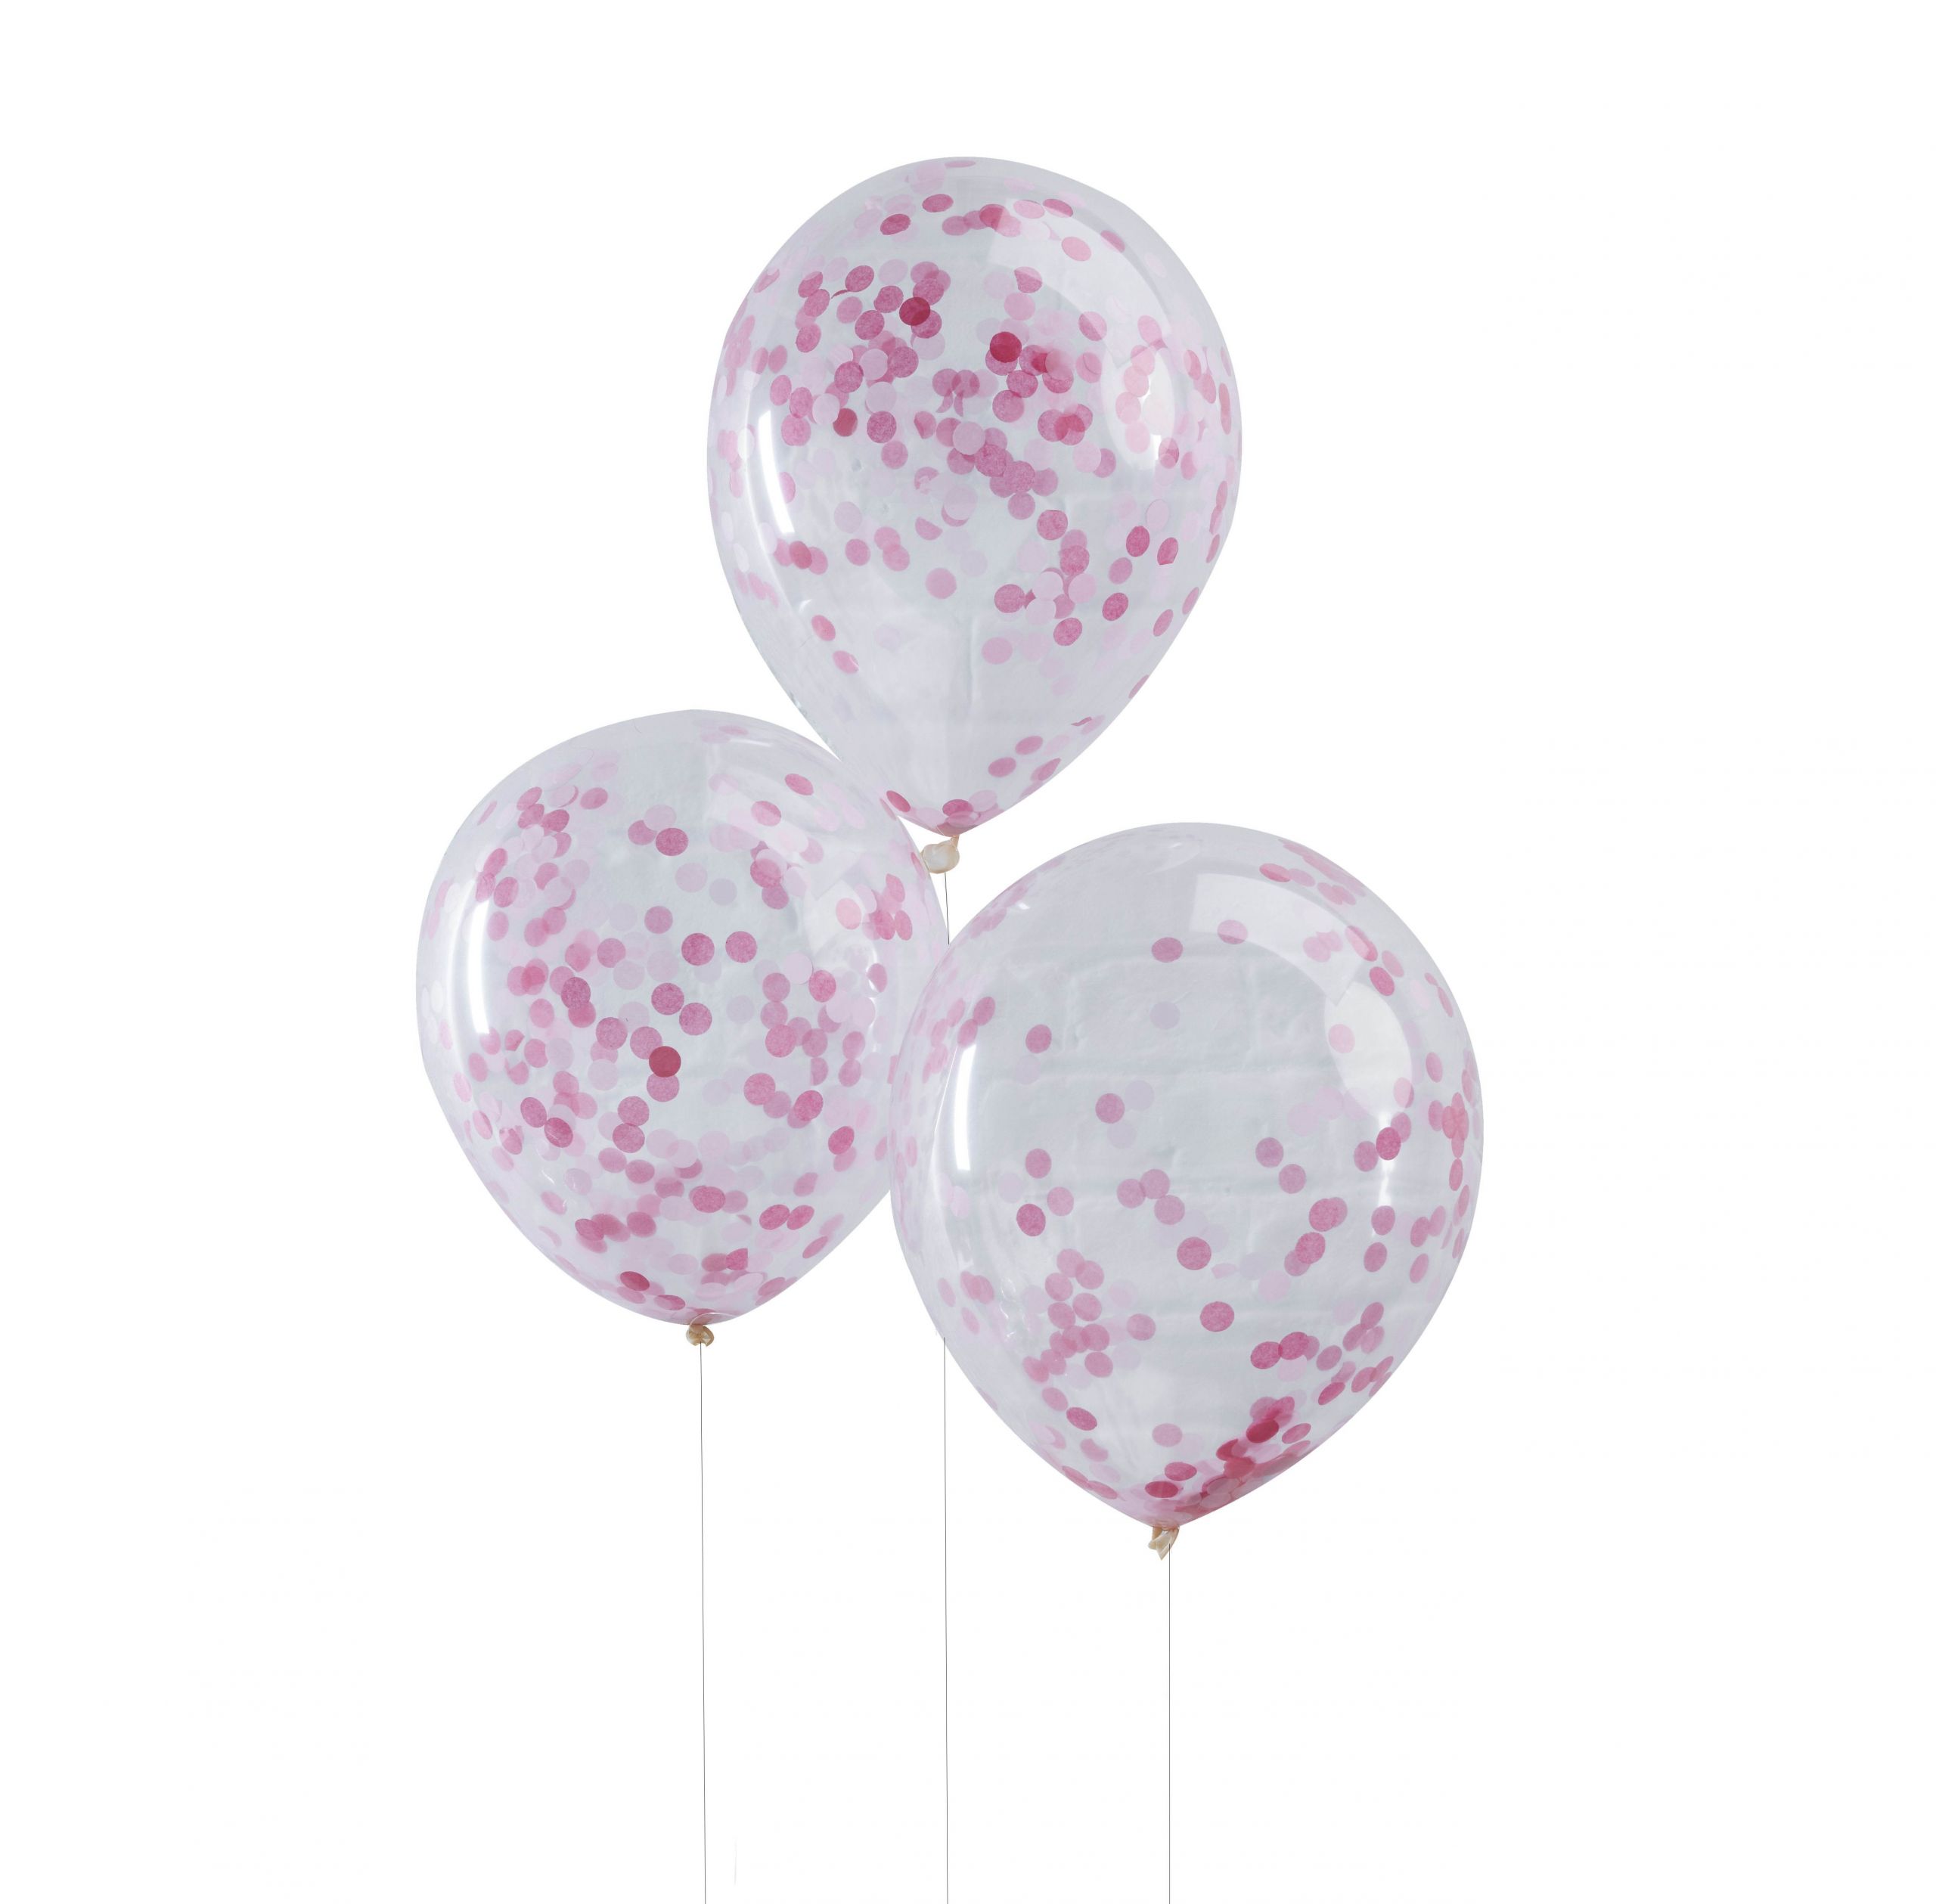 pick and mix 5 latexballons mit pinkem 01 PM198 1